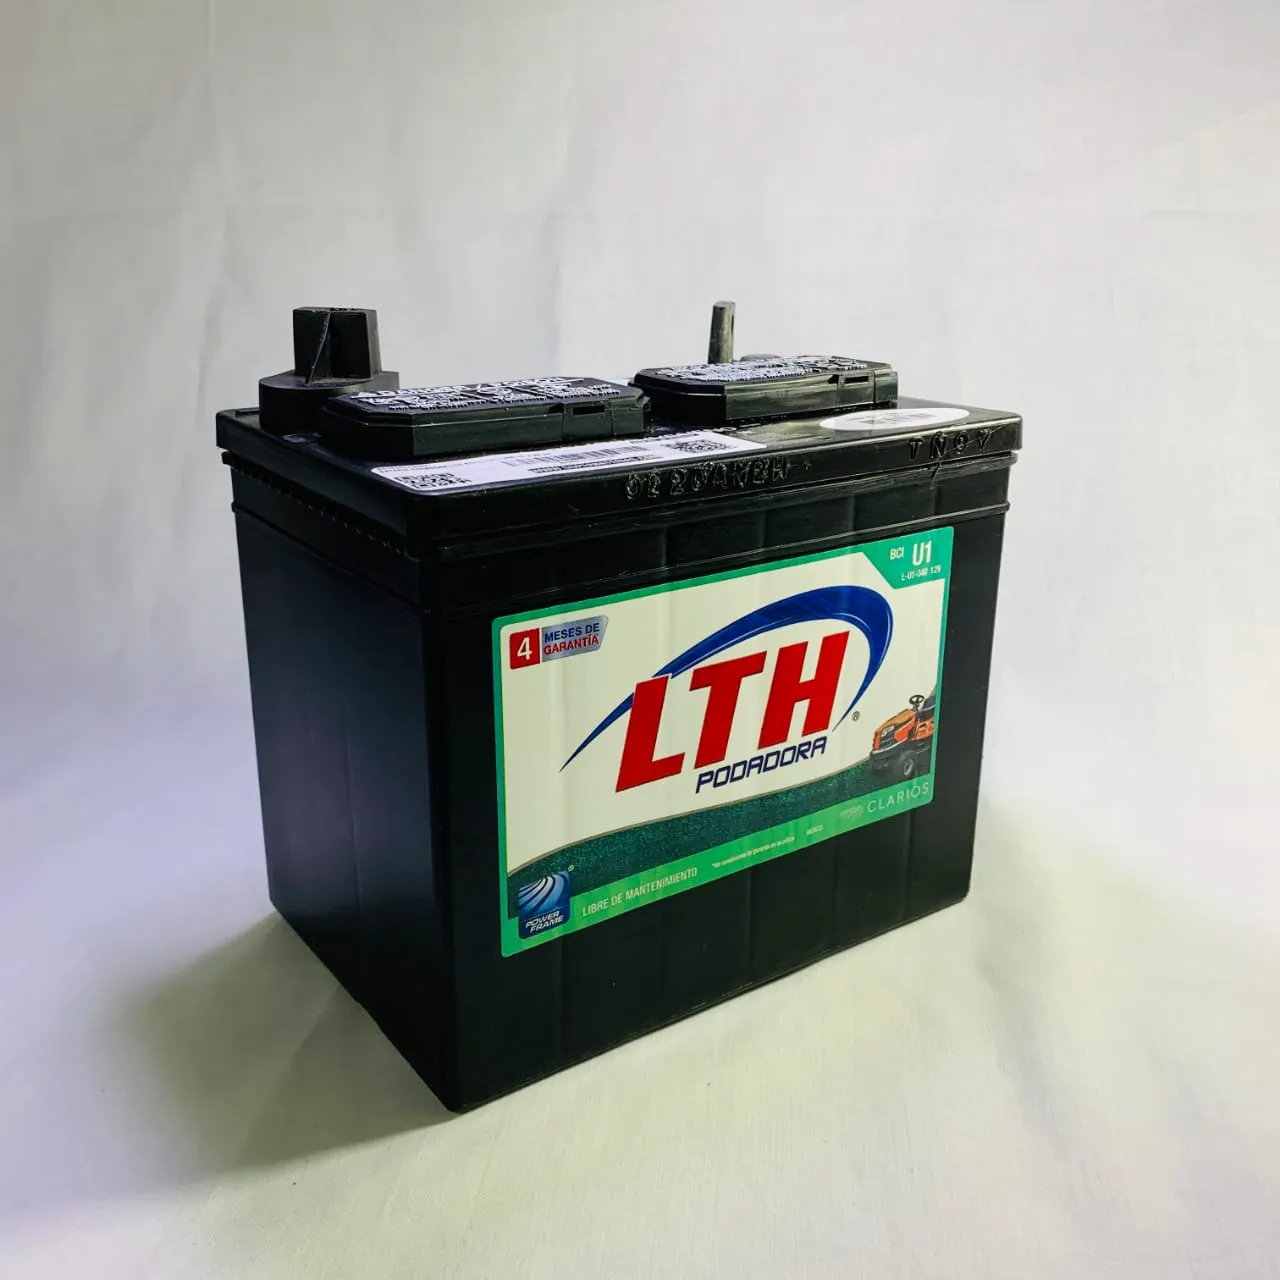 Baterias LTH Grupo U1 (Corta zacate)